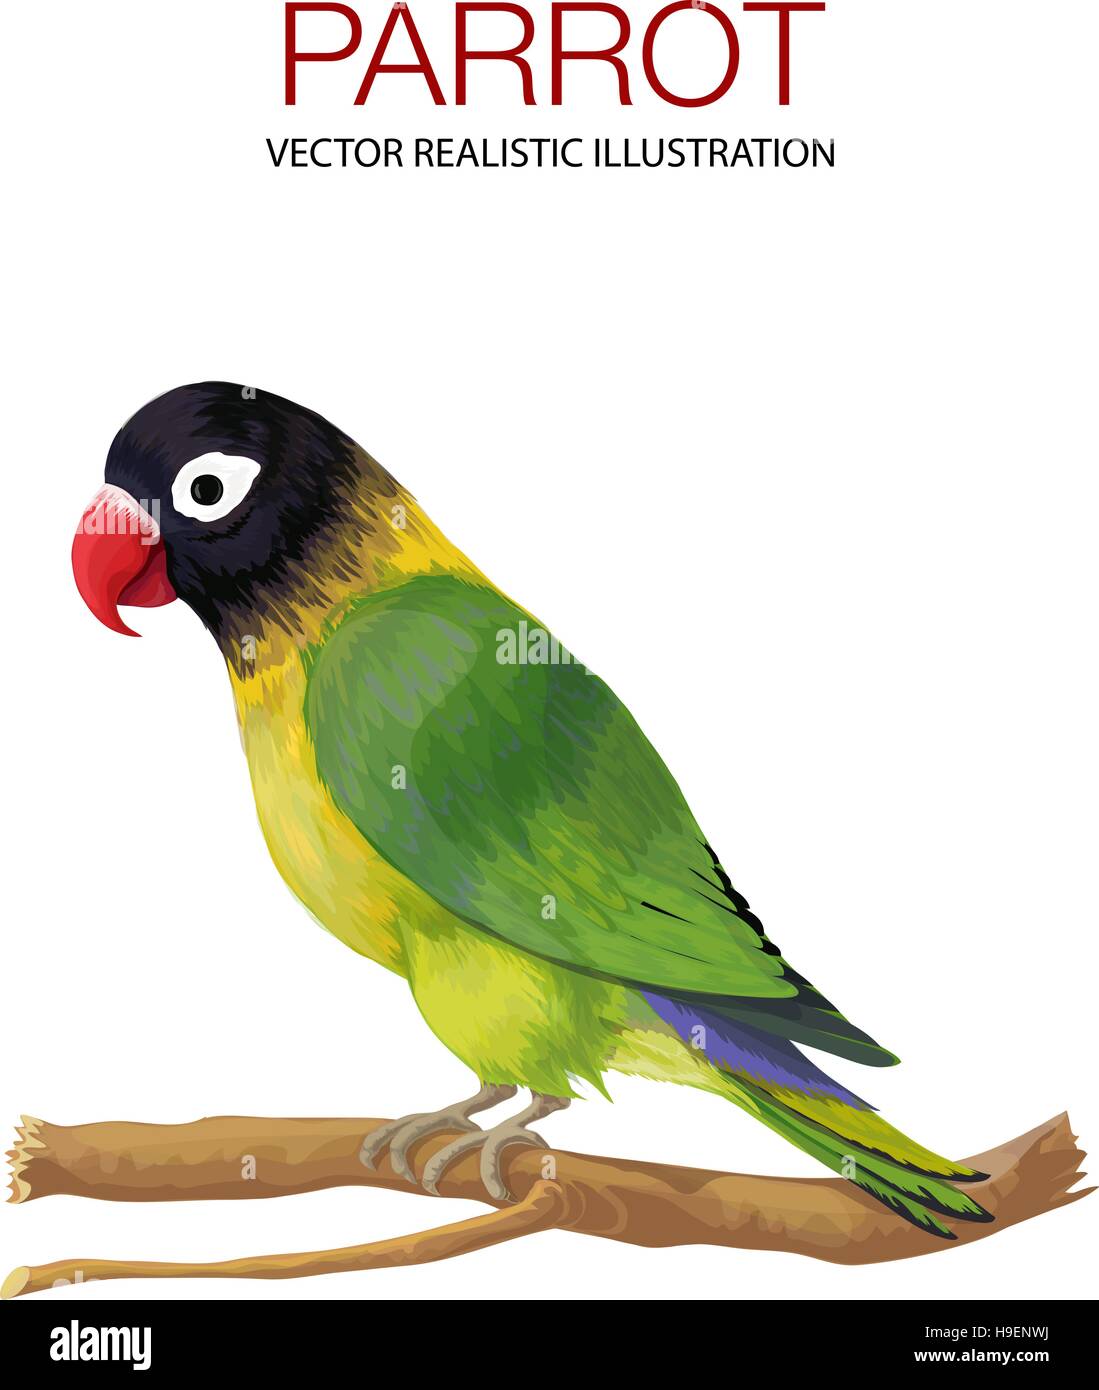 Parrot. Vector illustration réalisée dans un style réaliste. Illustration de Vecteur